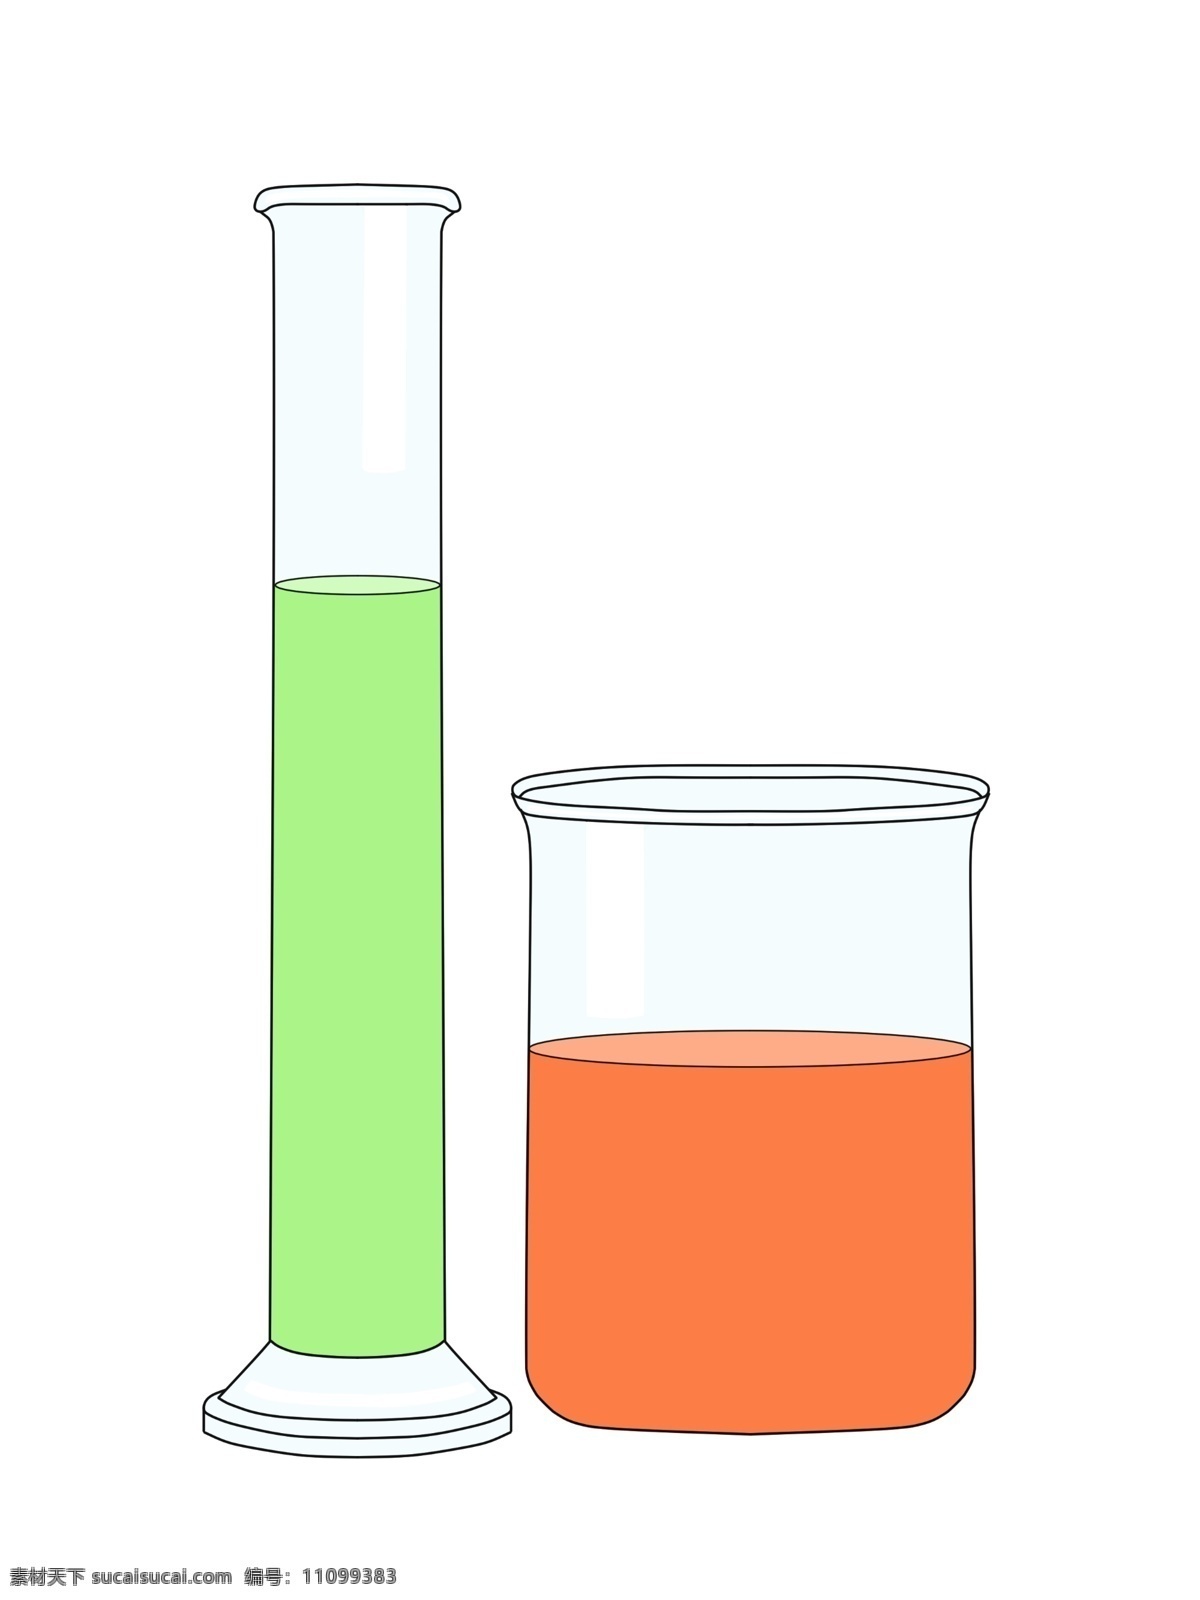 化学 量杯 器皿 插图 化学量杯 器皿插画 玻璃器皿 玻璃量杯 化学药物 绿色液体 红色药物